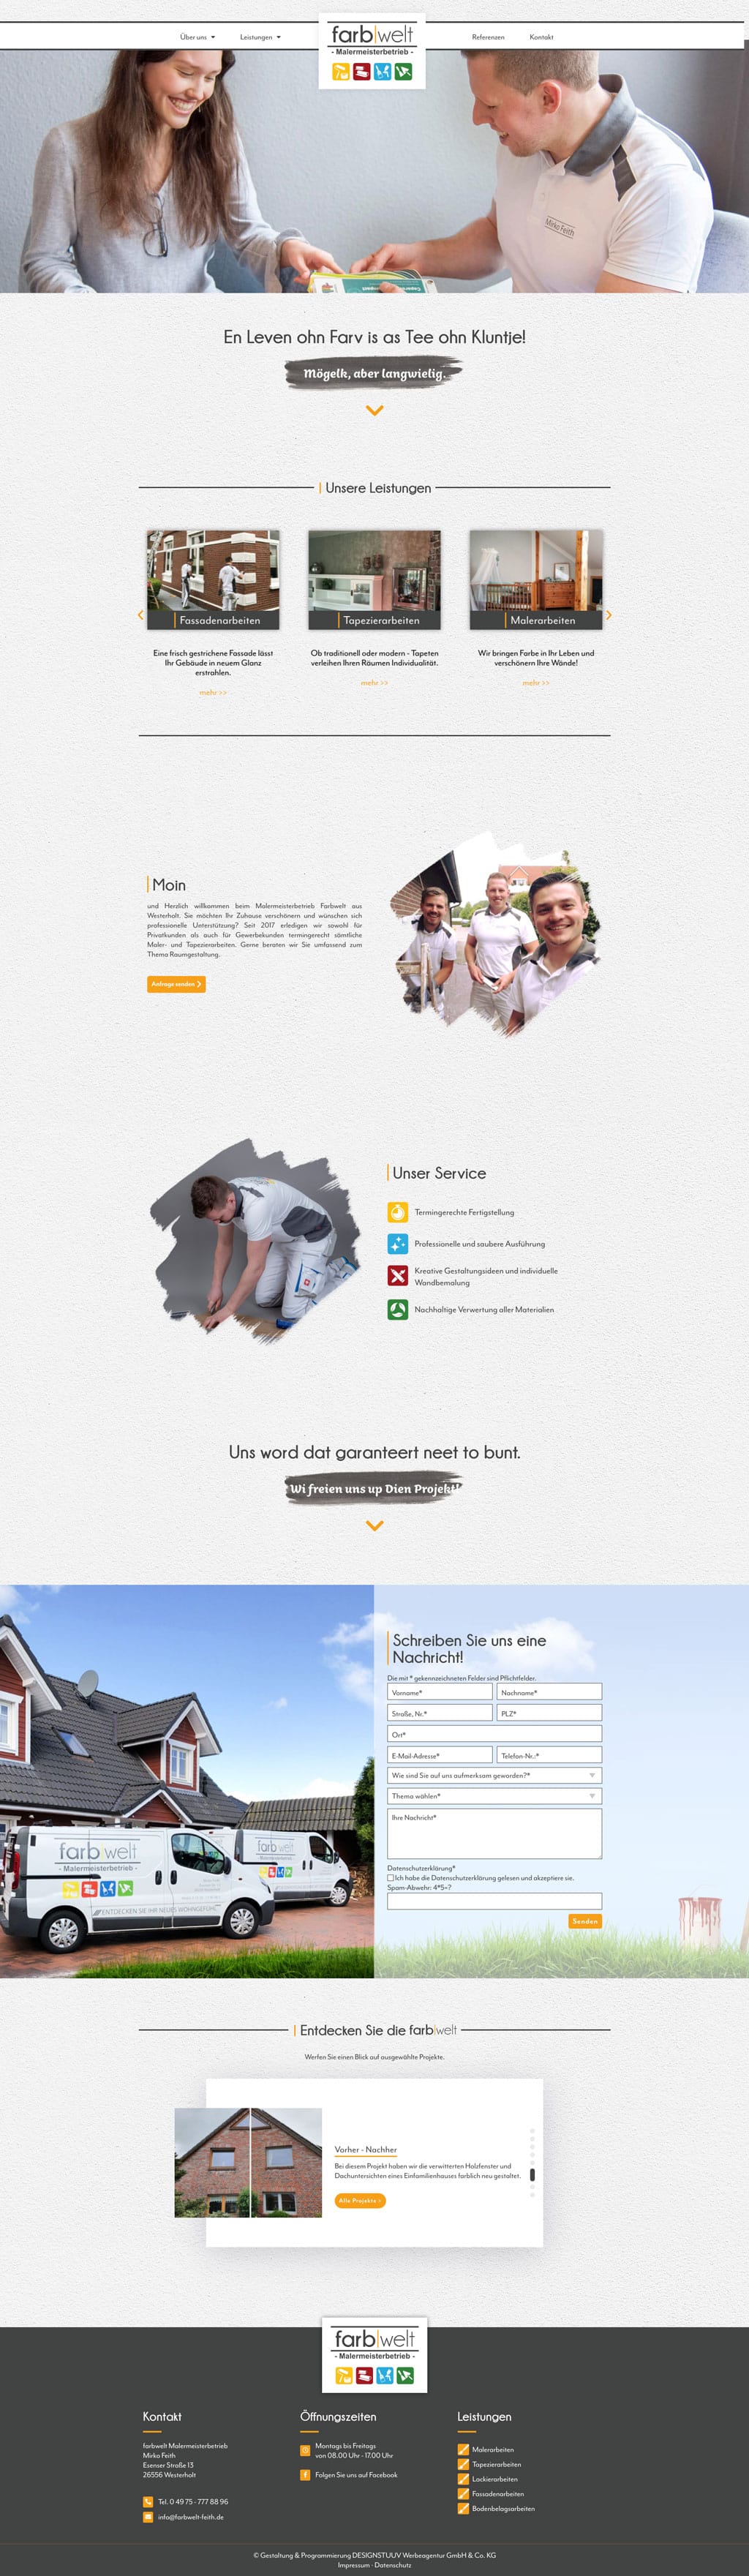 Designstuuv Referenzen farbwelt feith website desktop